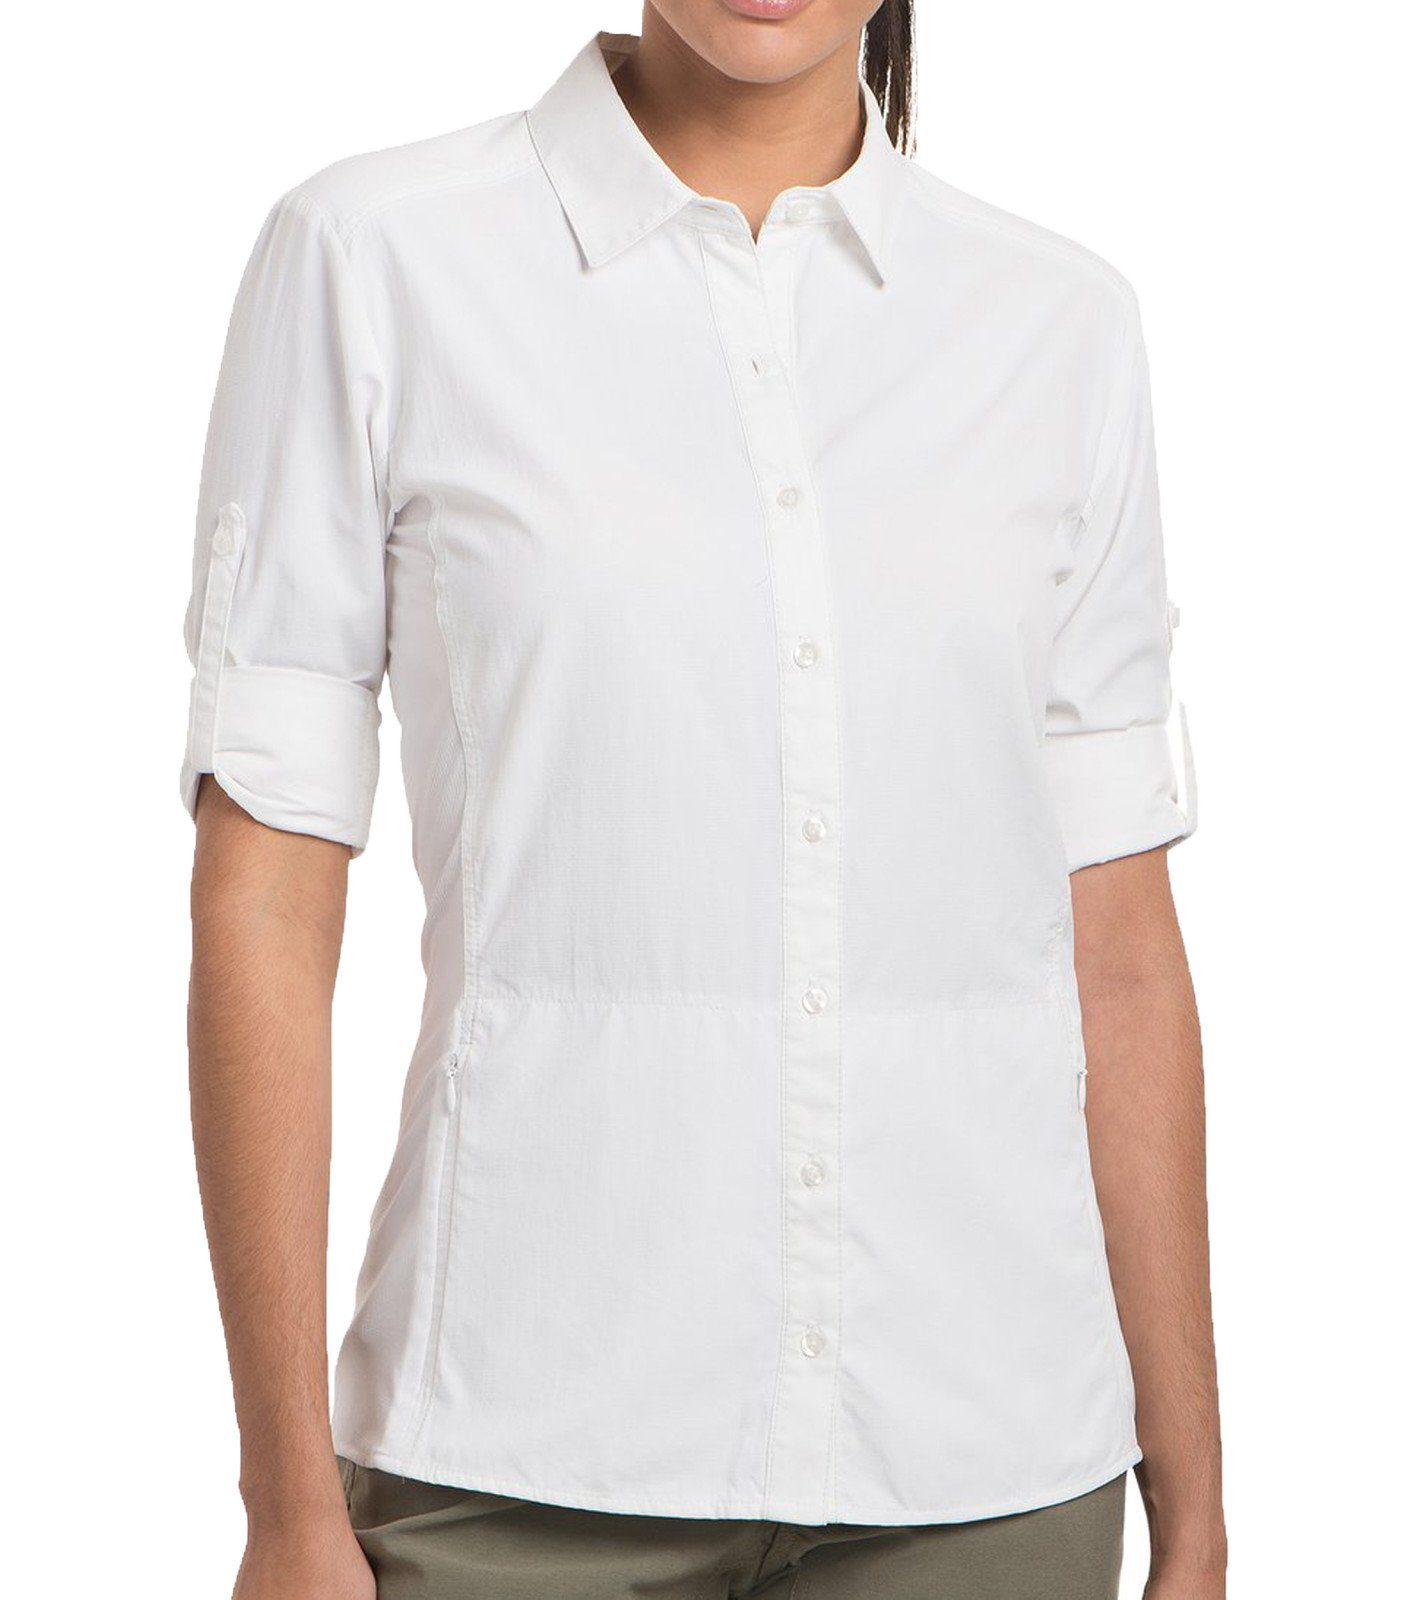 KÜHL Langarmbluse »KÜHL Invoke LS Langarm-Bluse komfortable Damen  Hemd-Bluse mit Stehkragen Outdoor-Bluse Weiß« online kaufen | OTTO